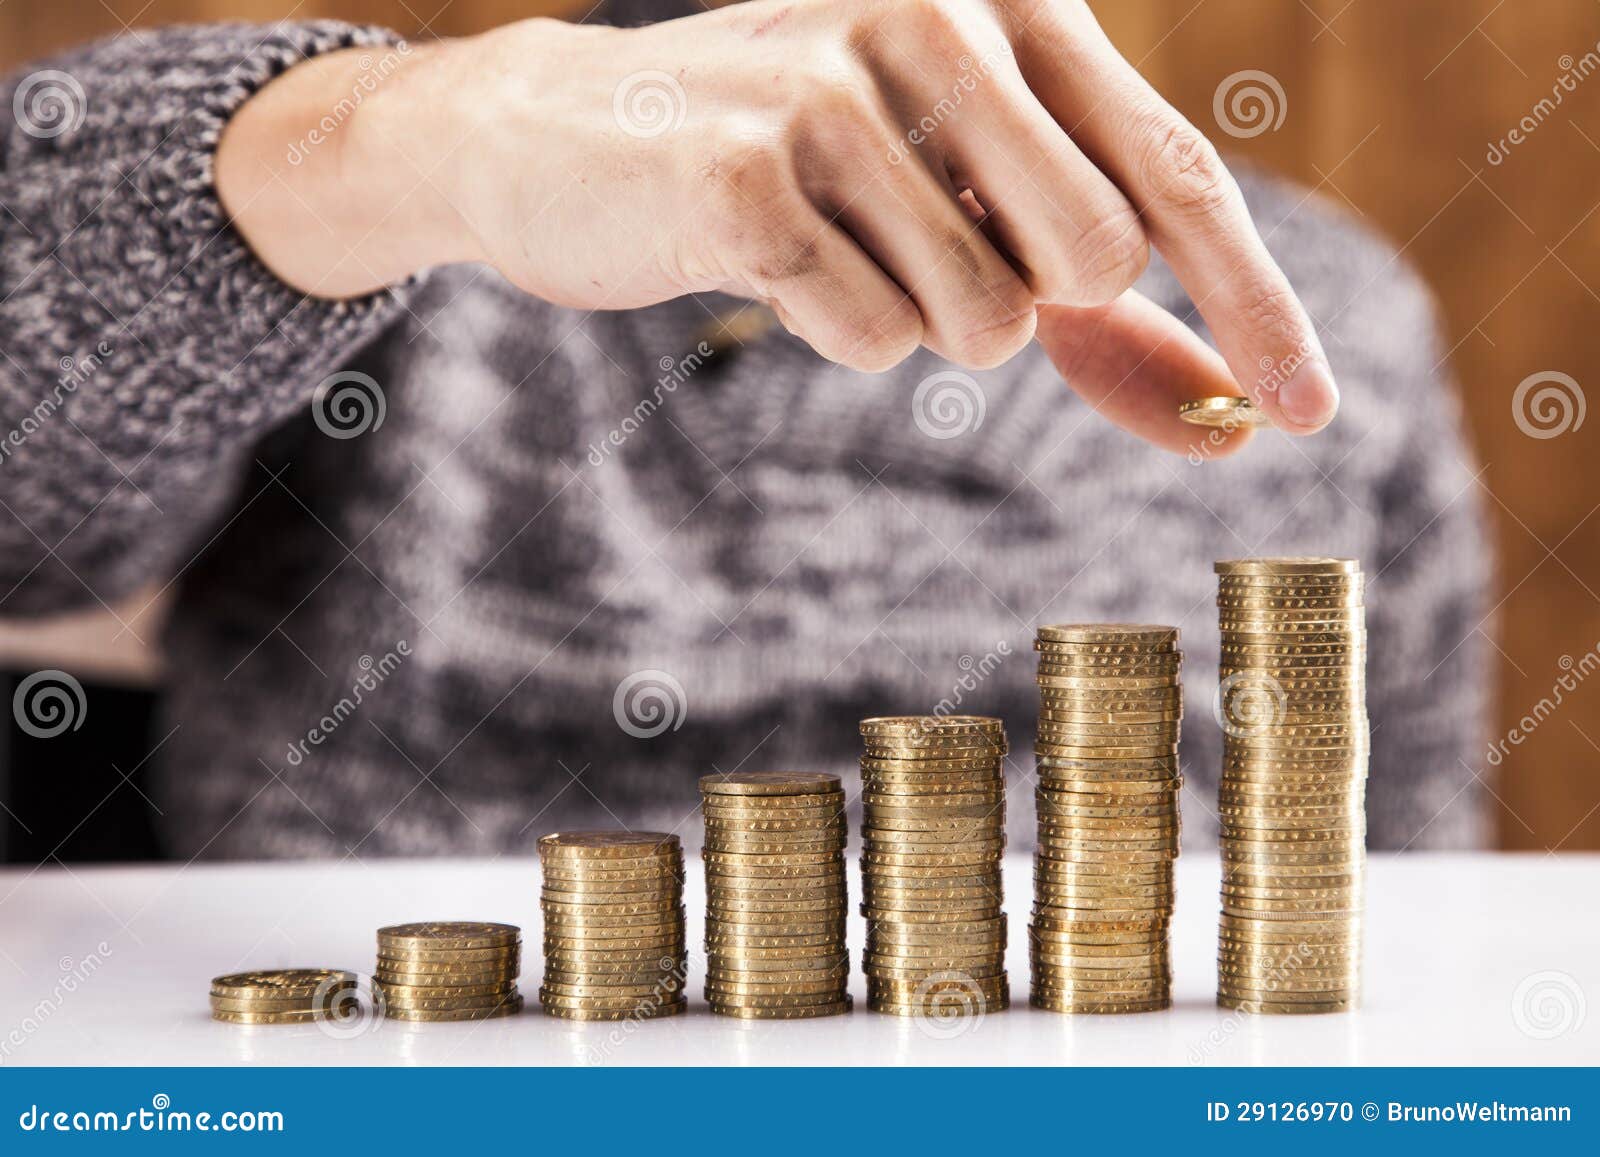 Männer, die Münzen zählen stockfoto. Bild von hand, finanzierung - 29126970